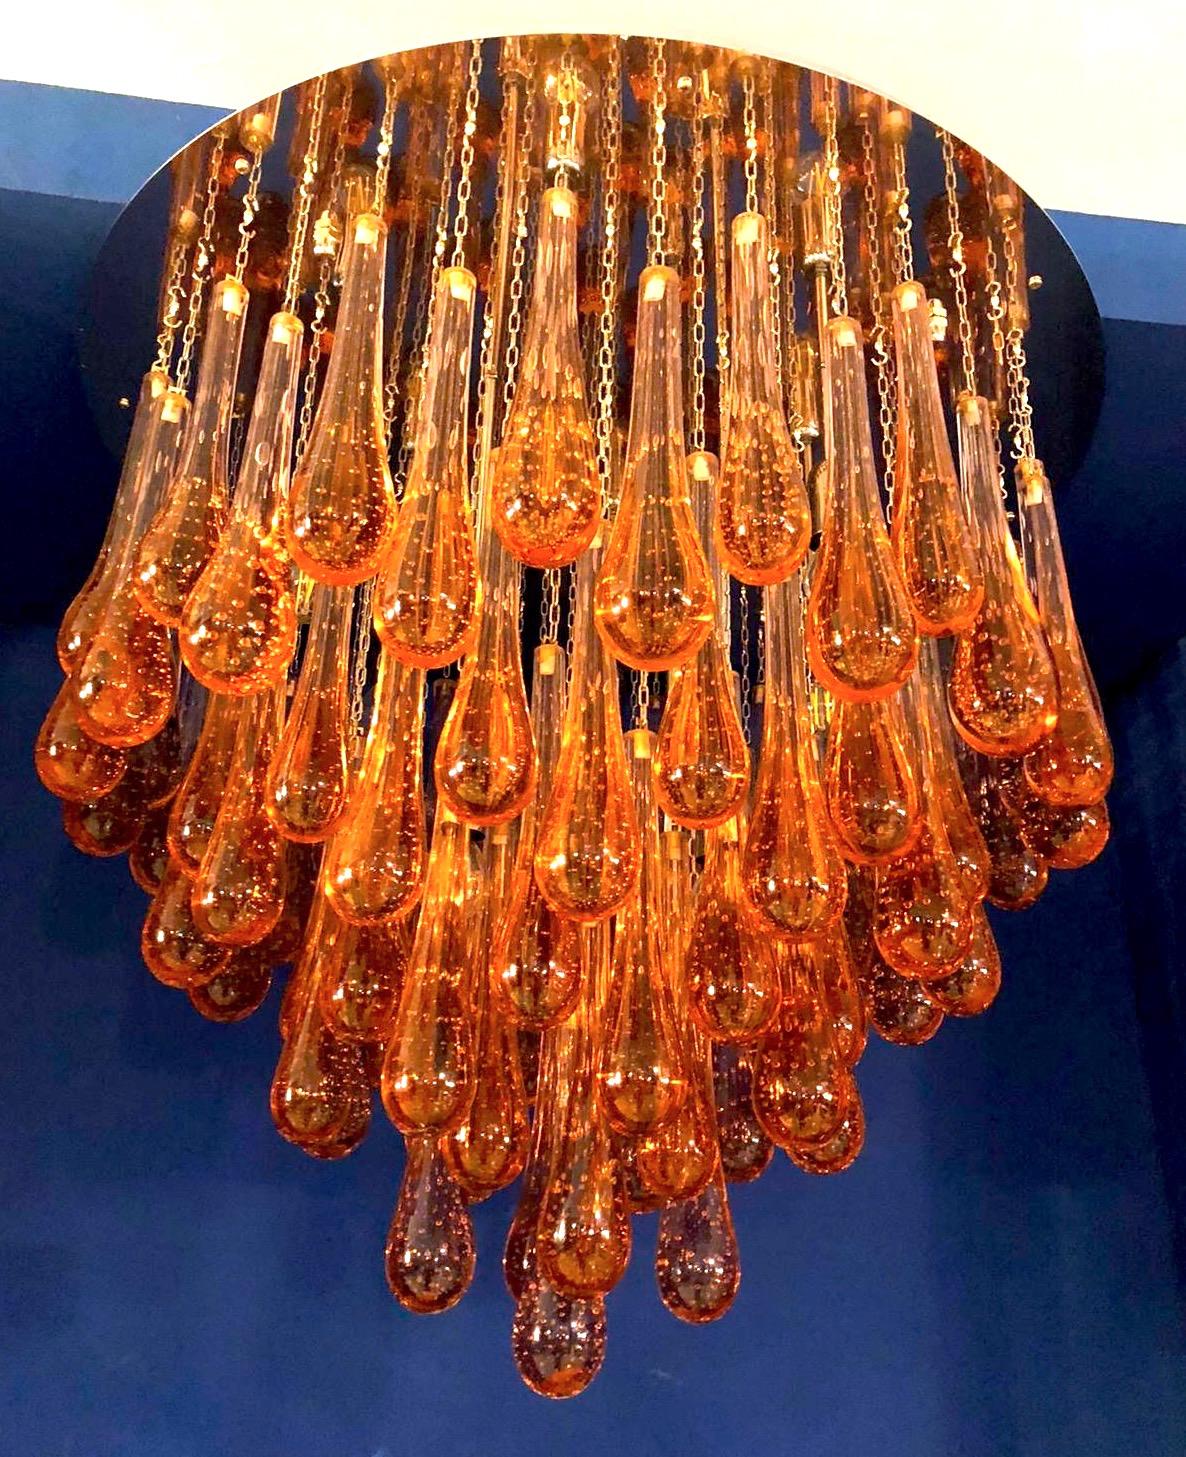 Moderner Kronleuchter aus Murano-Glas mit goldenen Tropfen auf einem Messingrahmen.
Vier E 14-Glühbirnen, verdrahtet nach US-Norm.
Variationen möglich, Größe, Ausführung, Glasfarbe.